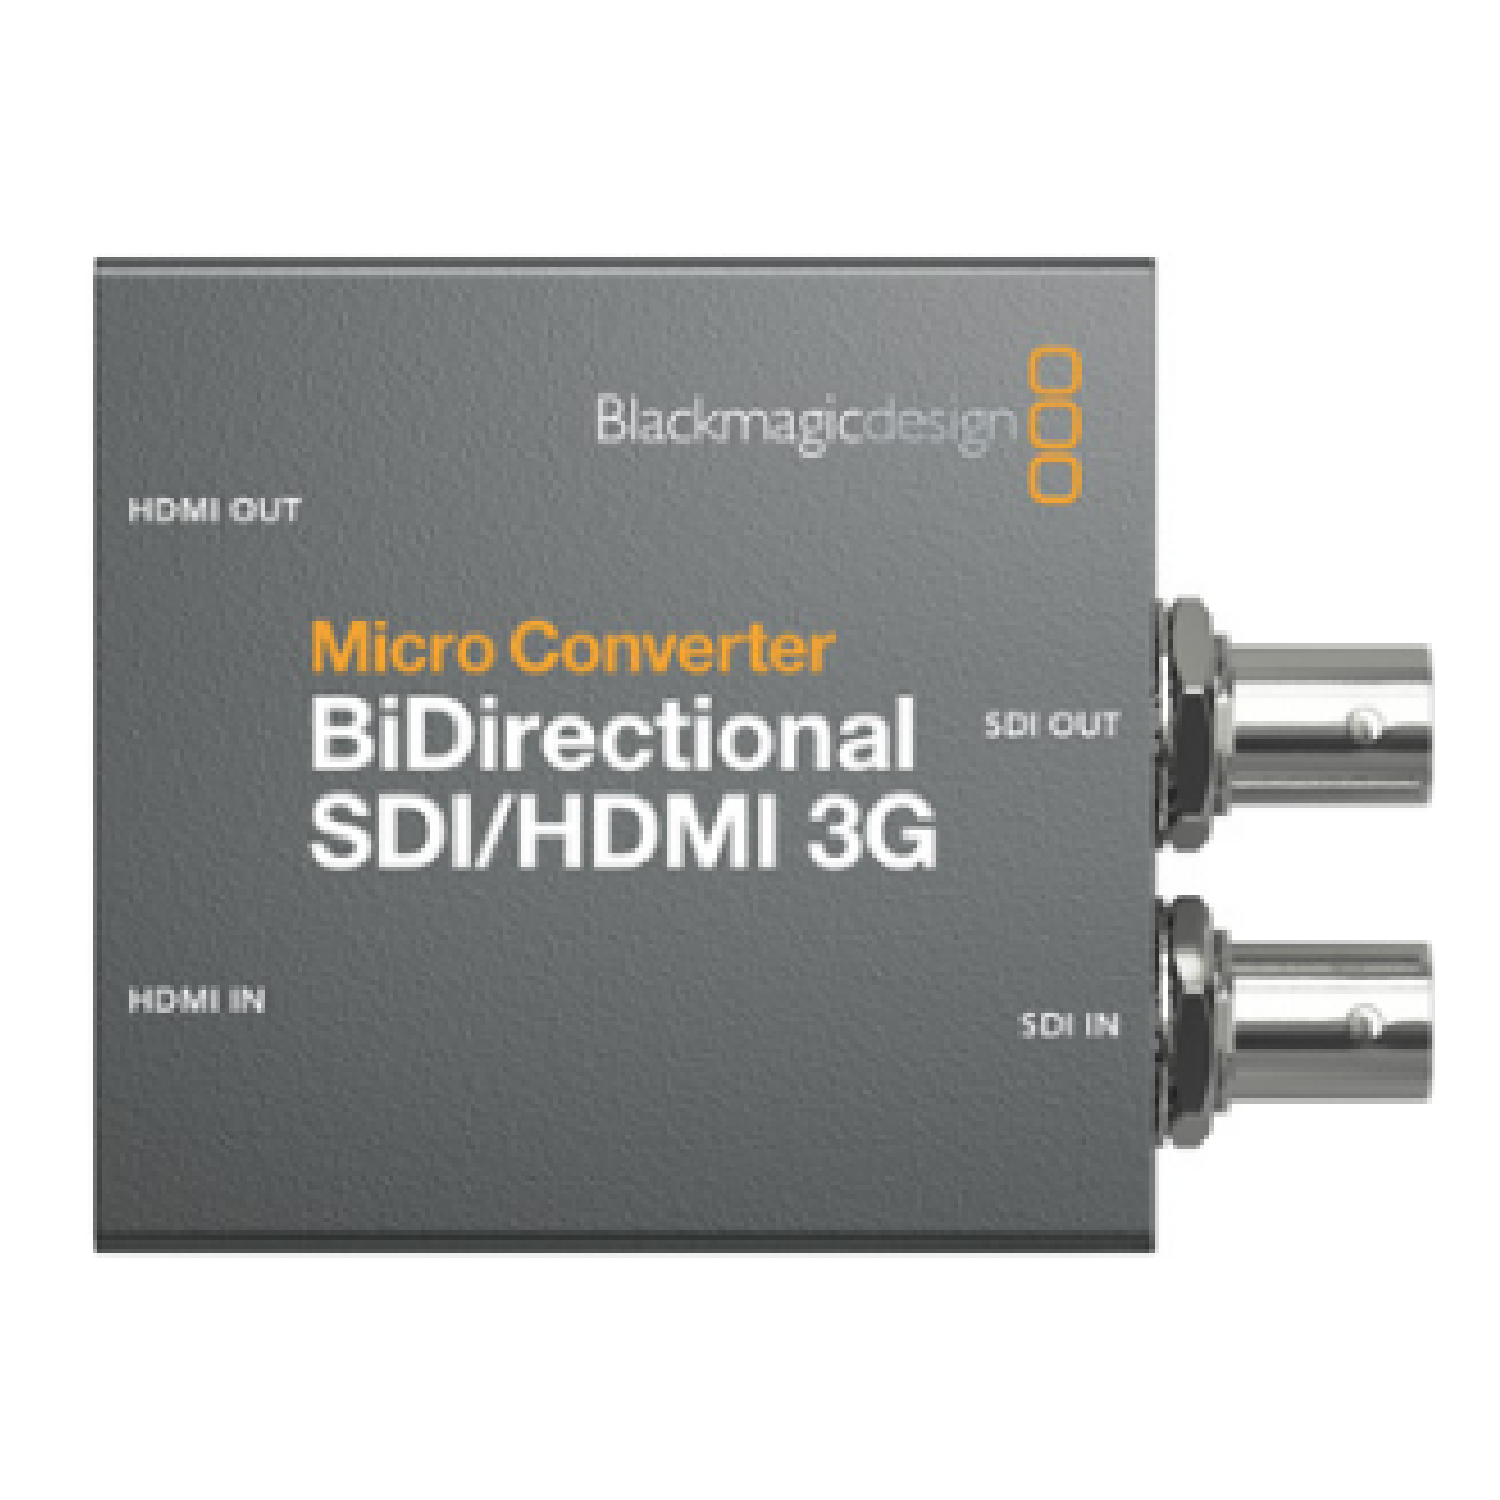 Simultaneously Convert 3G SDI to HDMI and HDMI to 3G SDI   MICRO CONVERTER BIDIRECTIONAL SDI/HDMI 3G blackmagicdesign